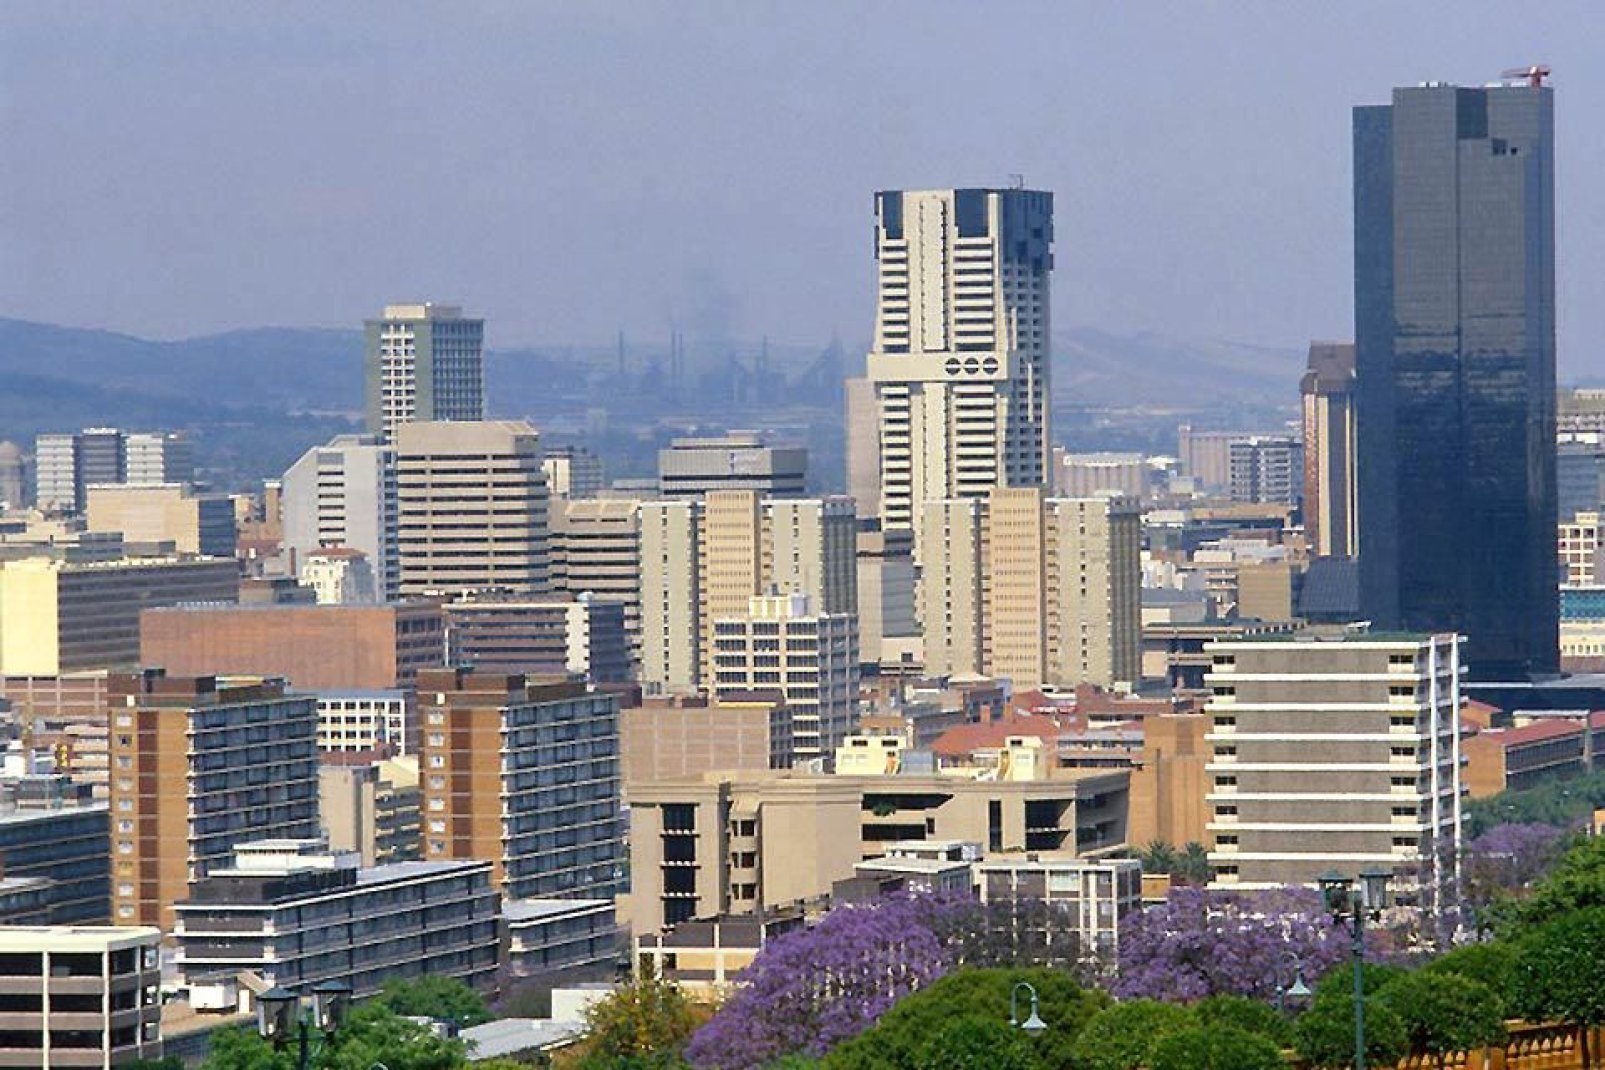 La città, antica capitale sudafricana del Transvaal, è abbastanza turistica. Pretoria è una città dinamica che sa farsi notare.